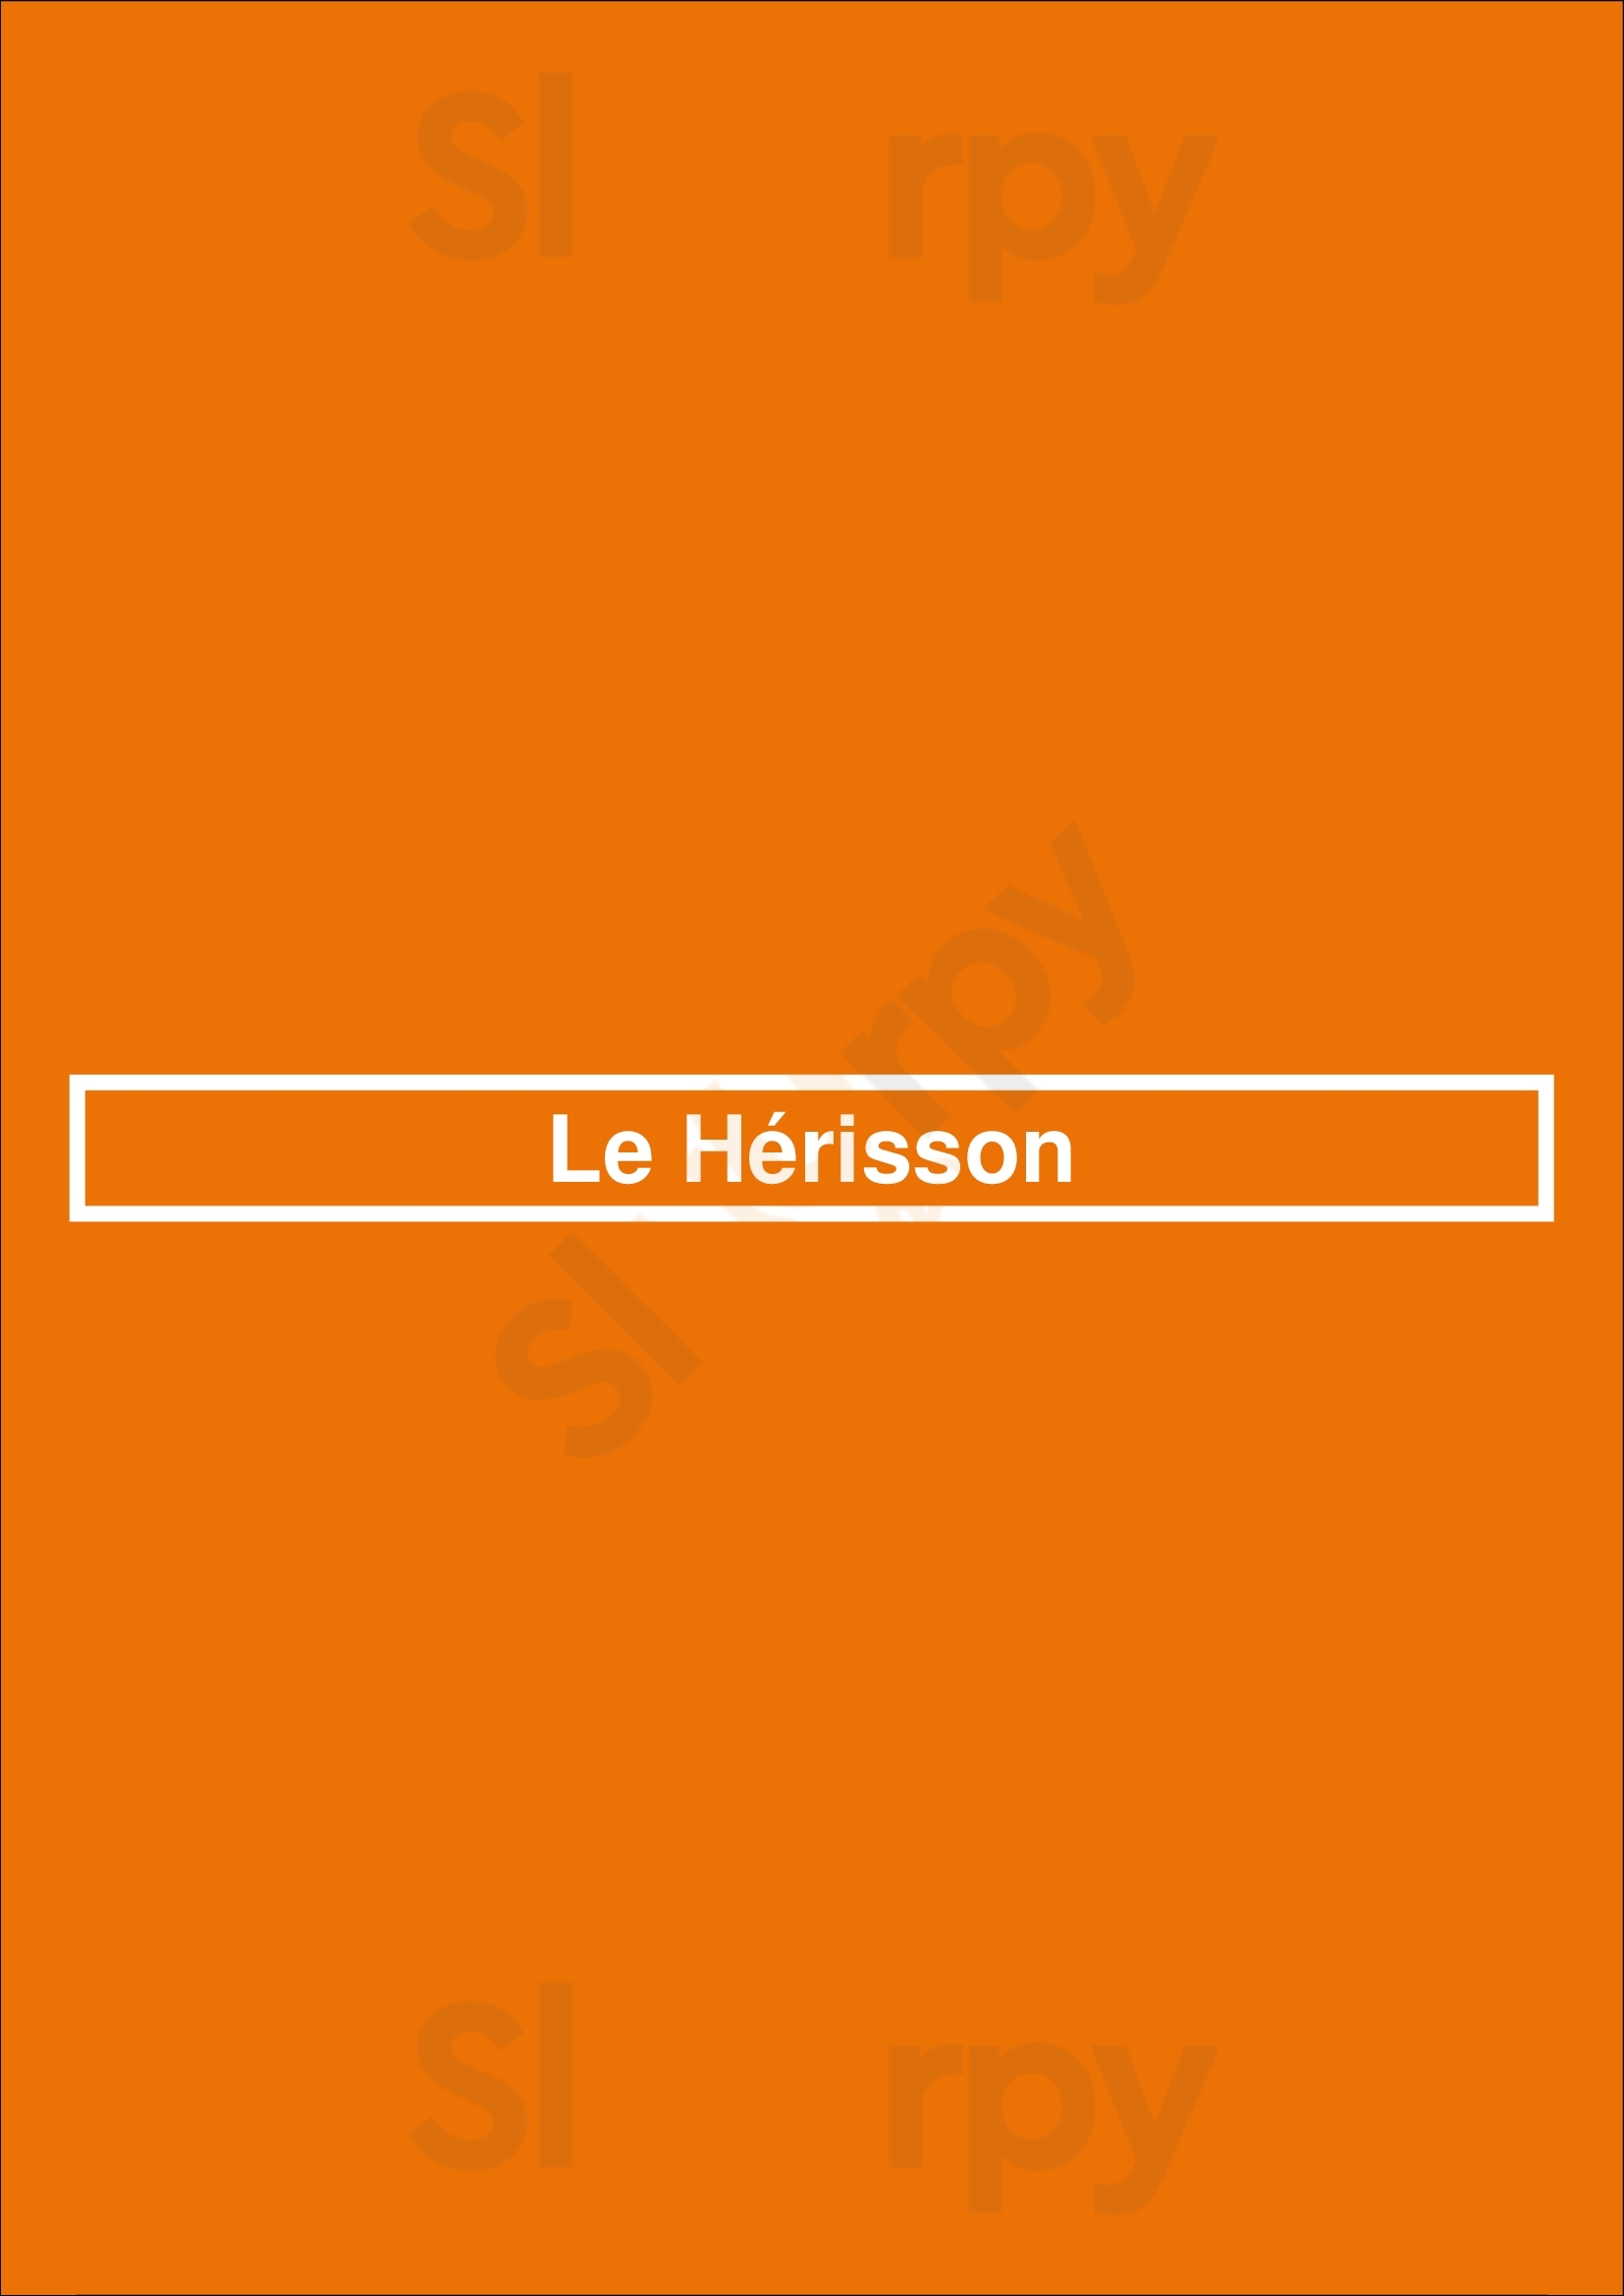 Le Hérisson Paris Menu - 1